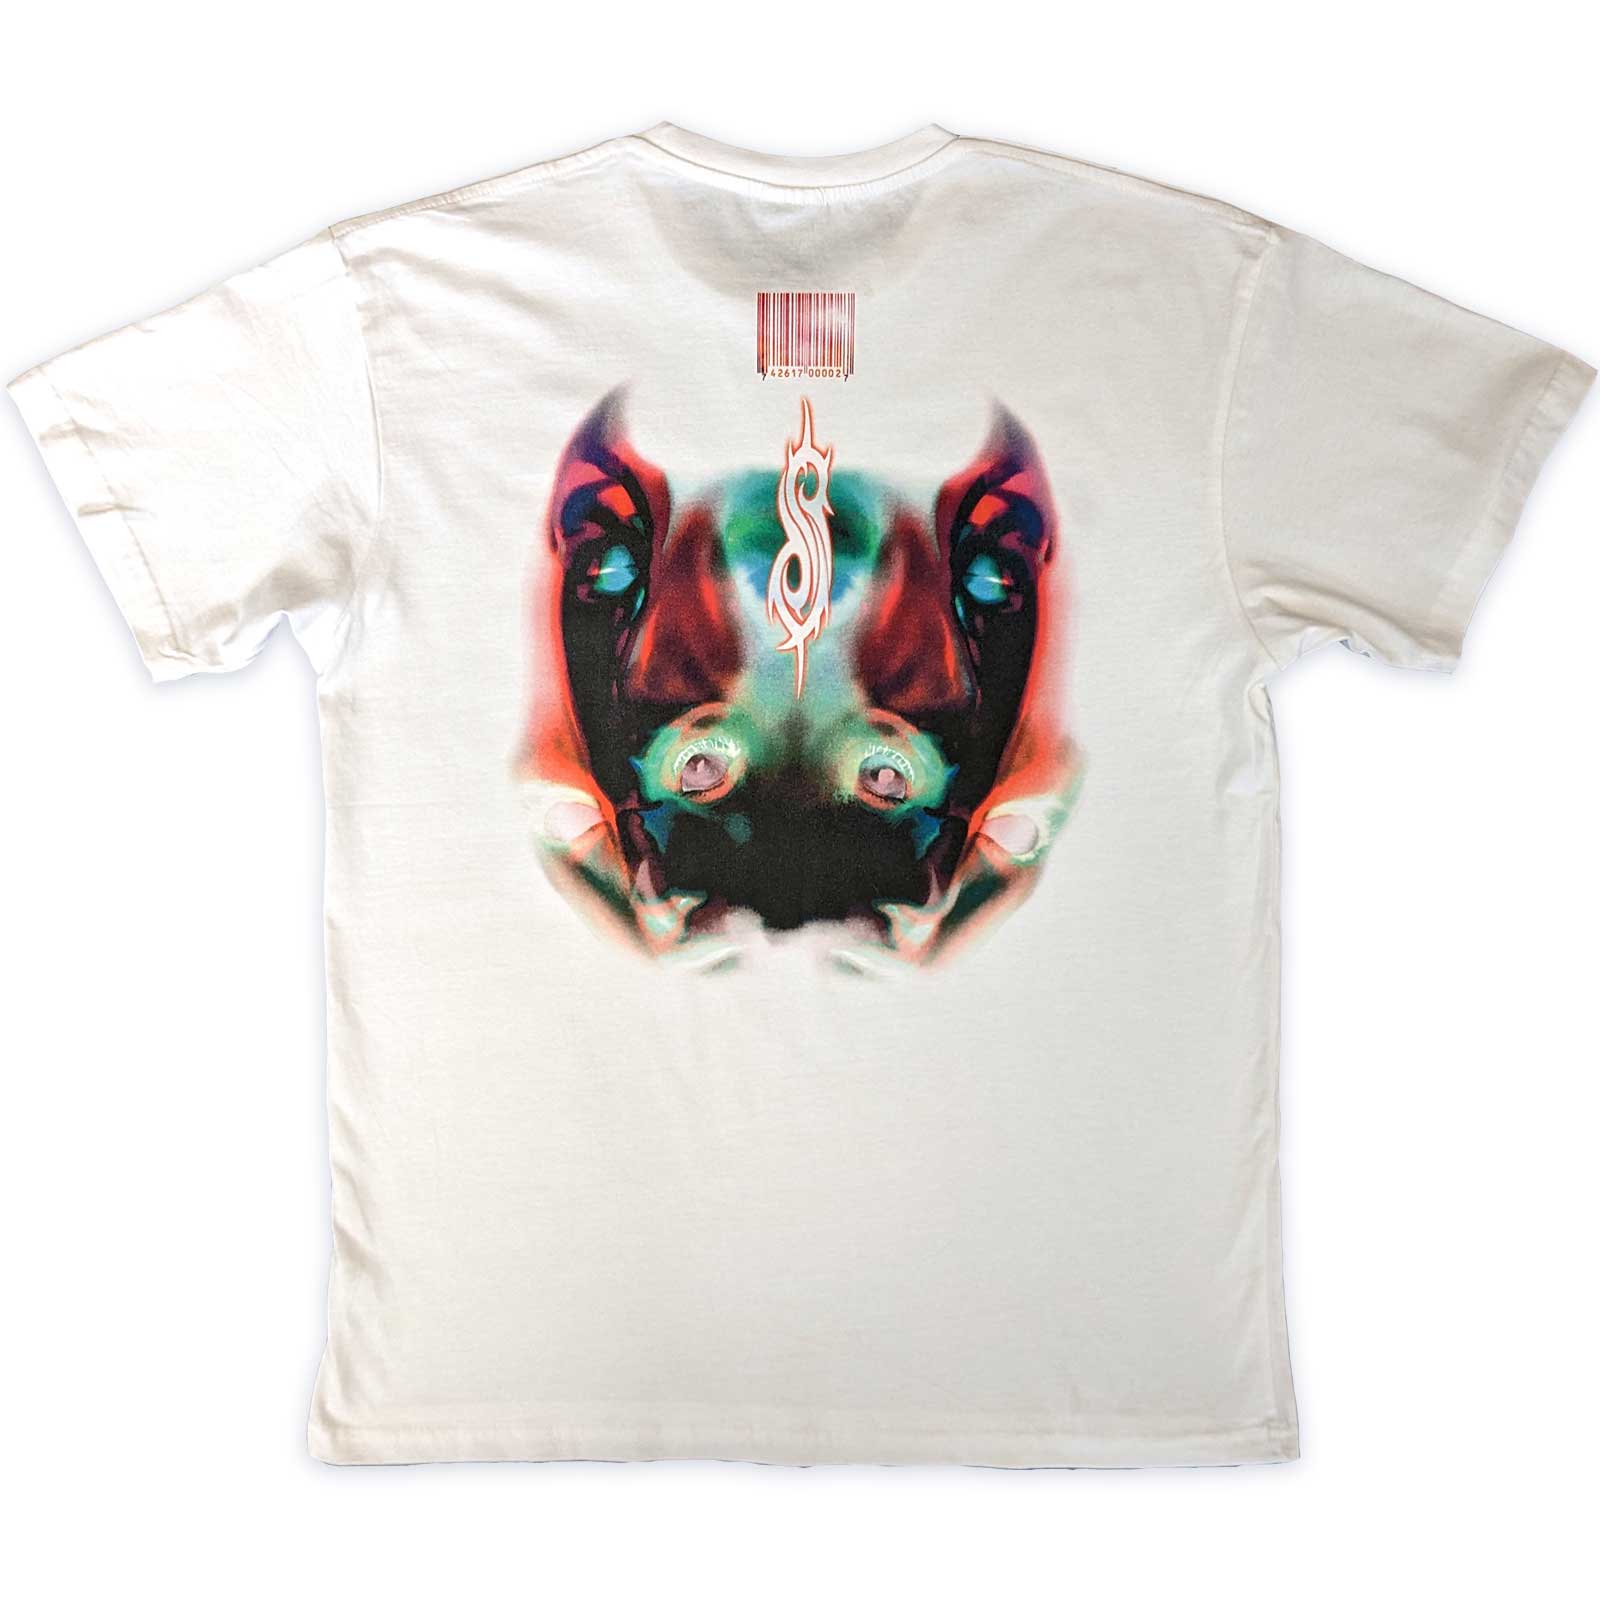 Slipknot T-Shirt - Adderal Faceback (Back Print) - White Unisex Official Licensed Design - Jelly Frog